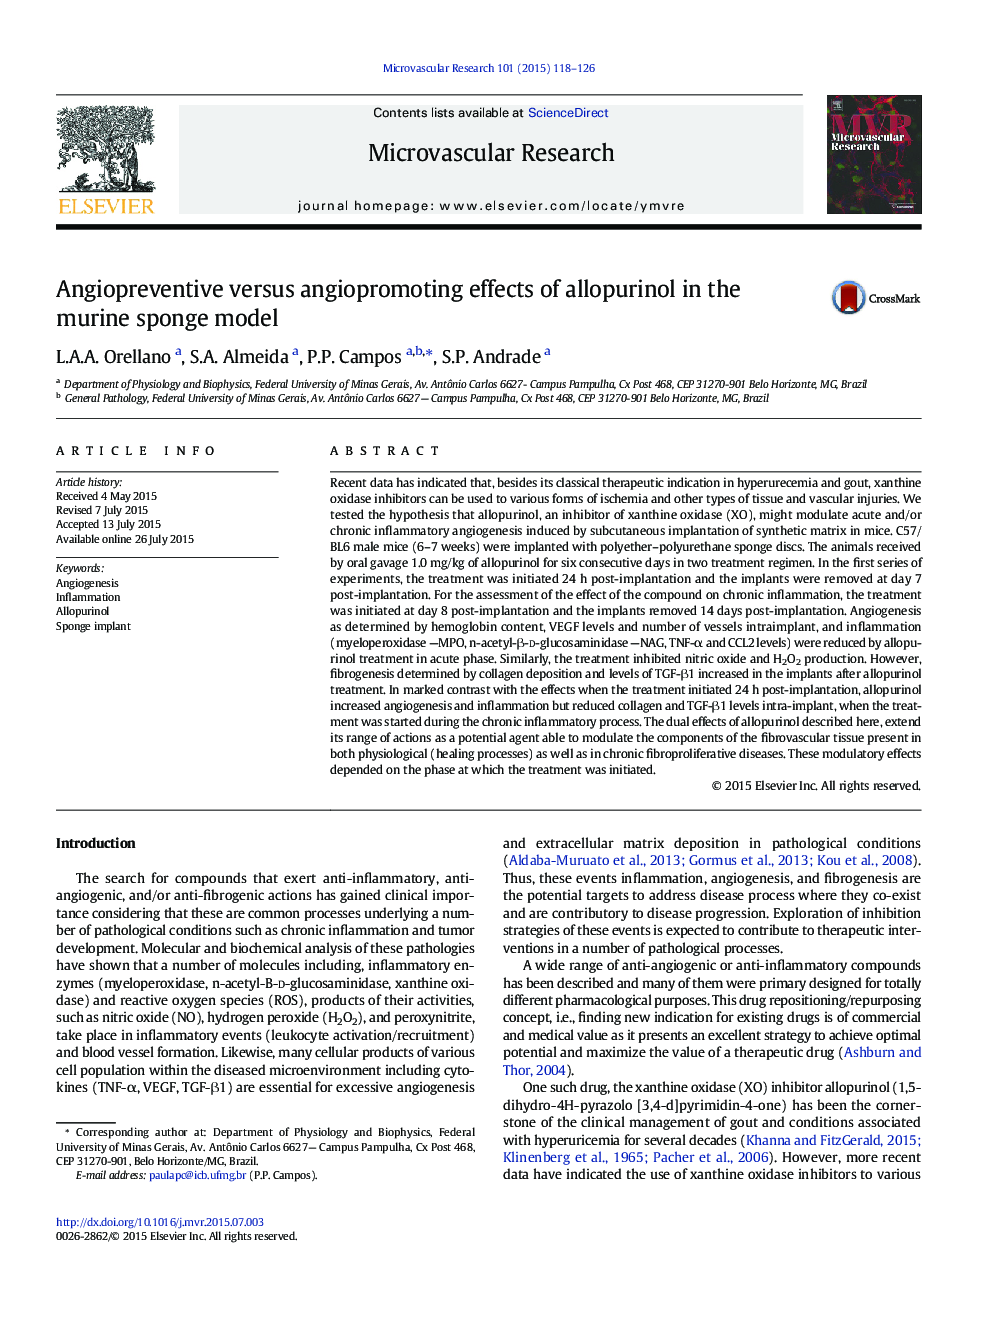 آنژیوپروتئین در برابر اثرات ضد التهابی آلوپورینول در مدل اسفنجی موش 